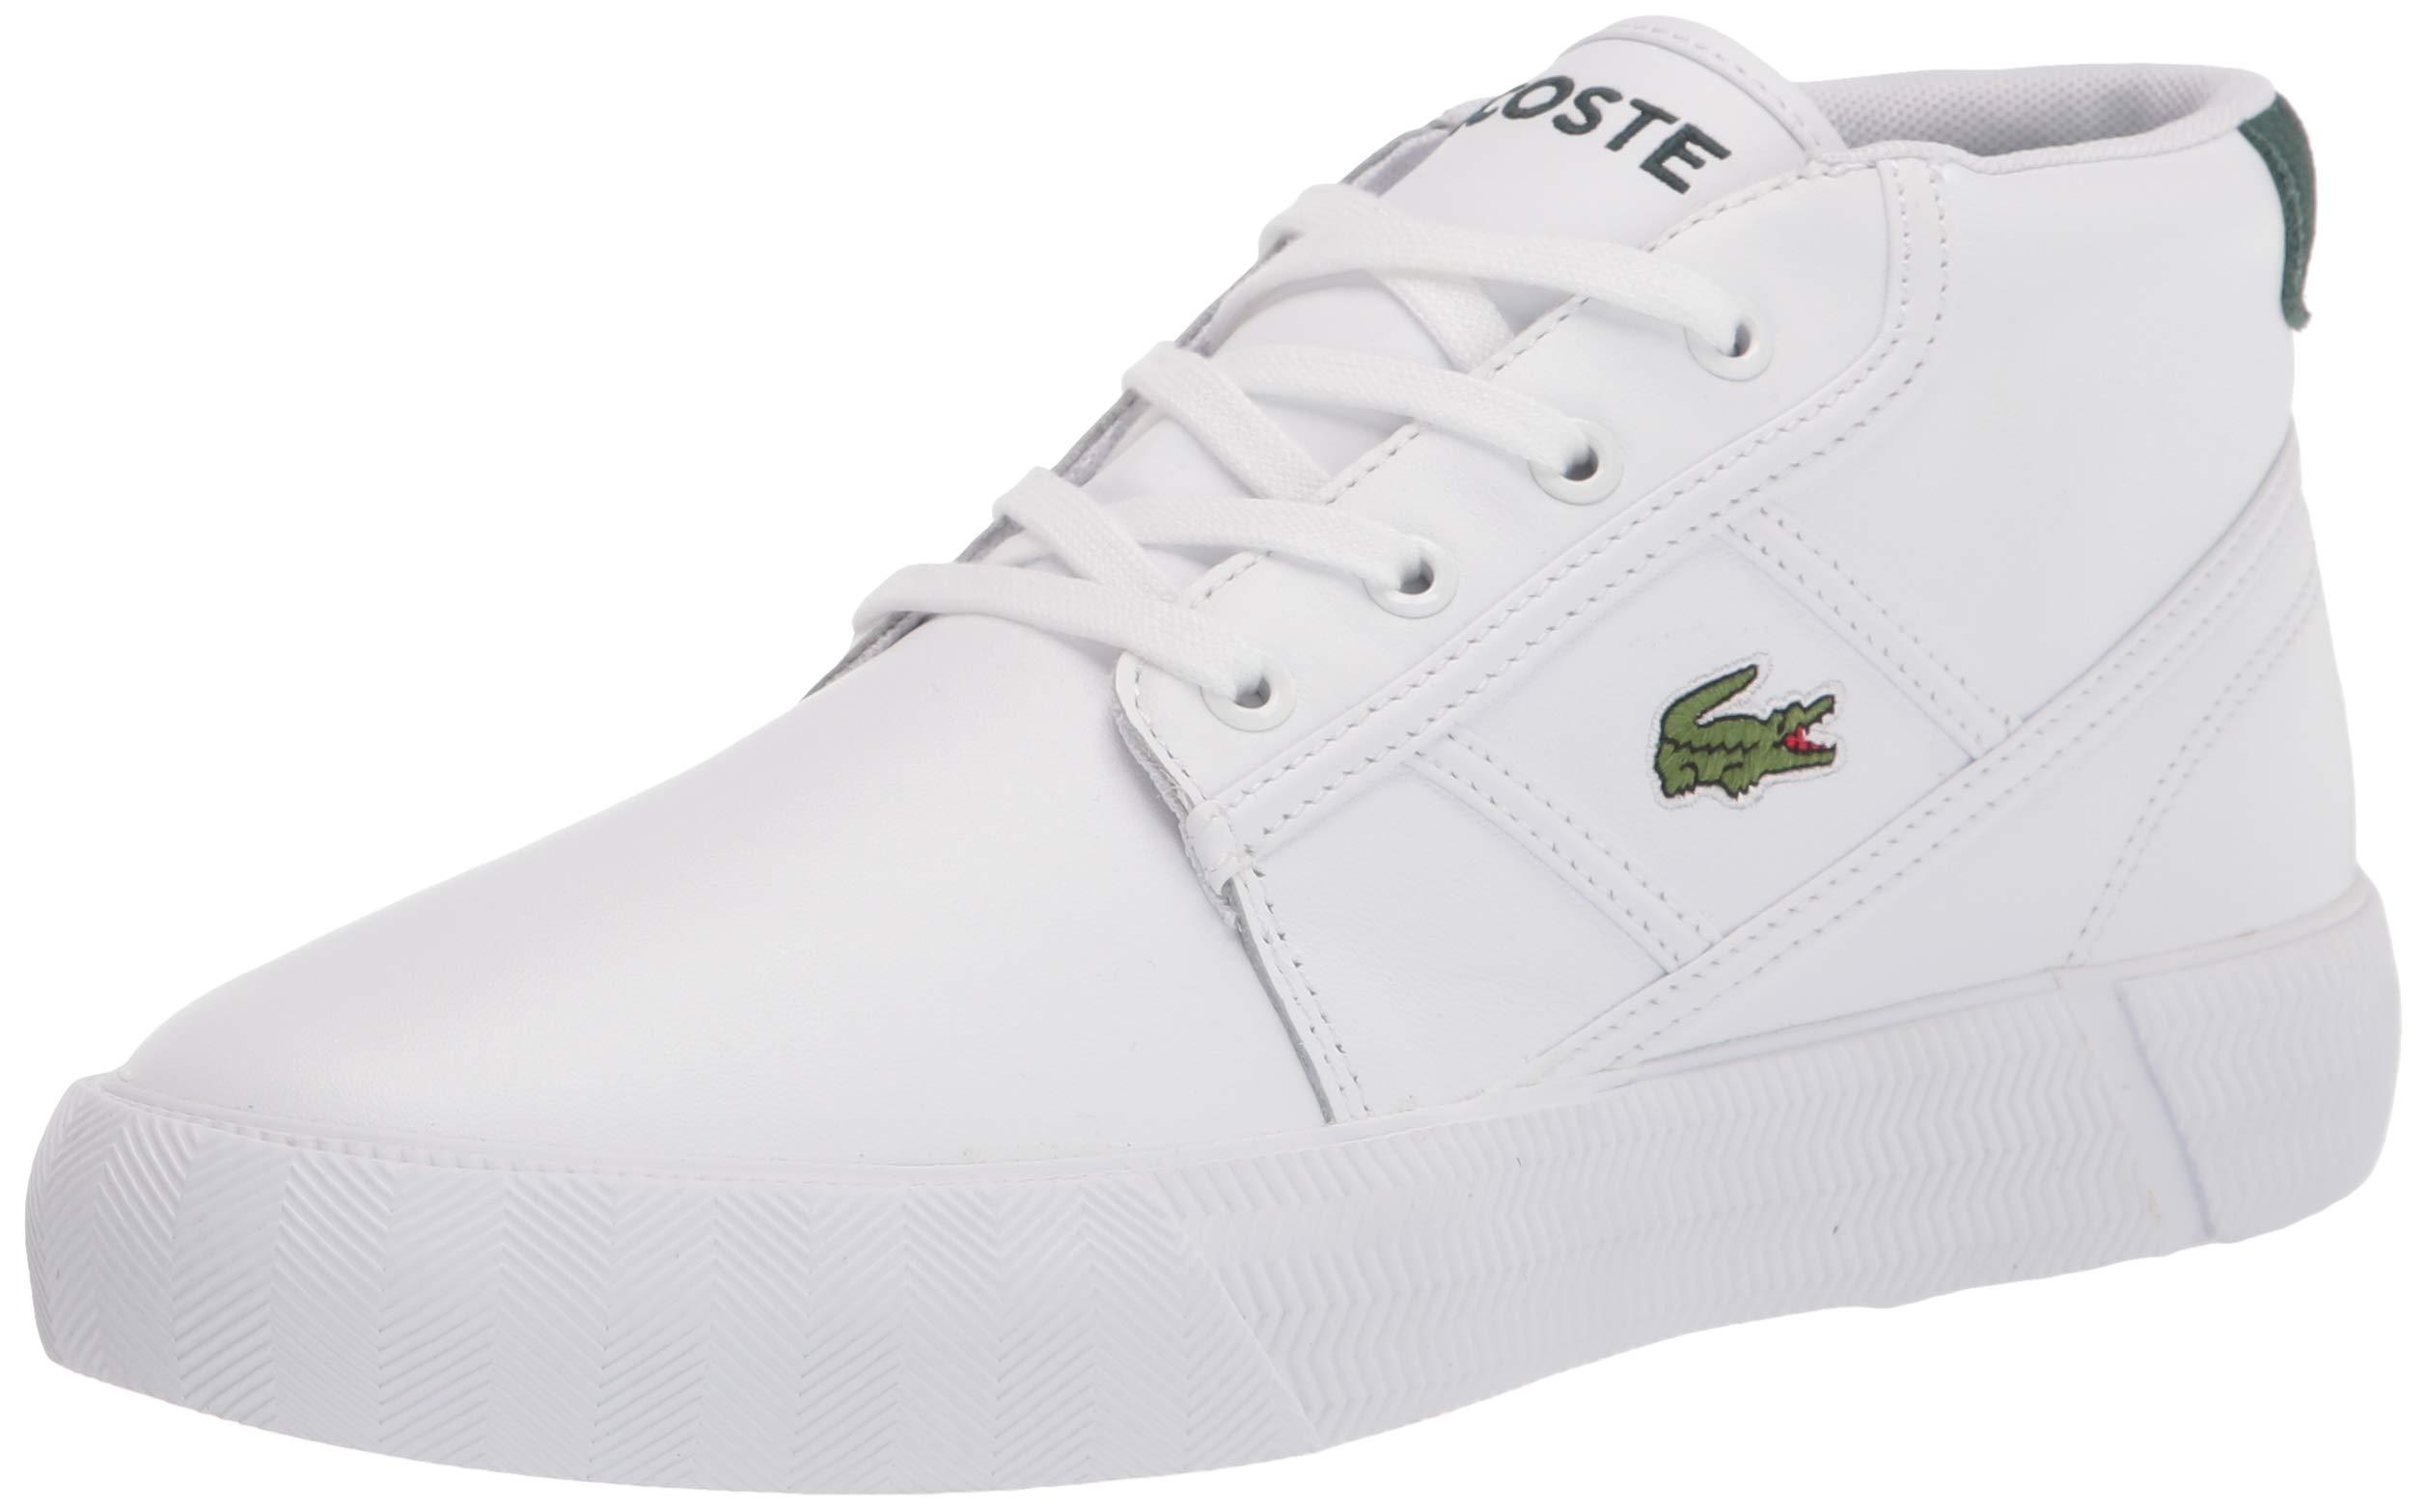 Lacoste Men's Gripshot Chukka 01201 Cma Sneaker in White/Dark Green (White)  for Men - Save 24% - Lyst